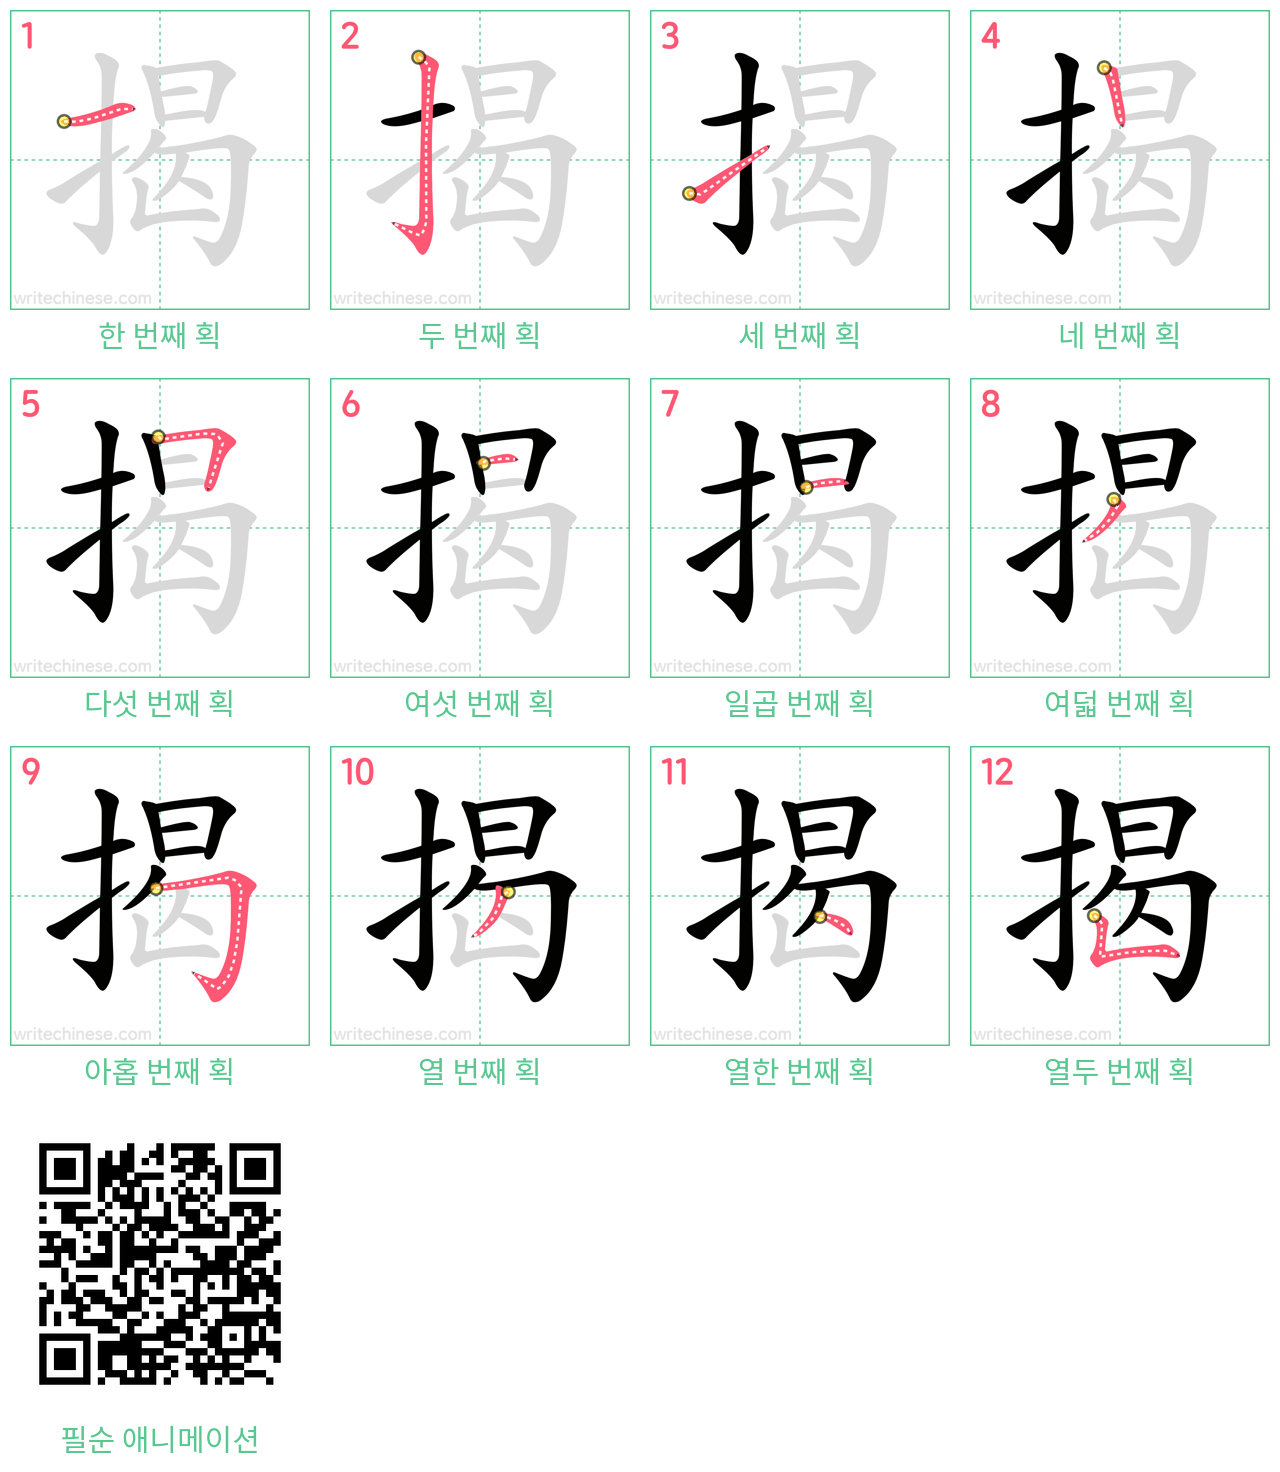 揭 step-by-step stroke order diagrams